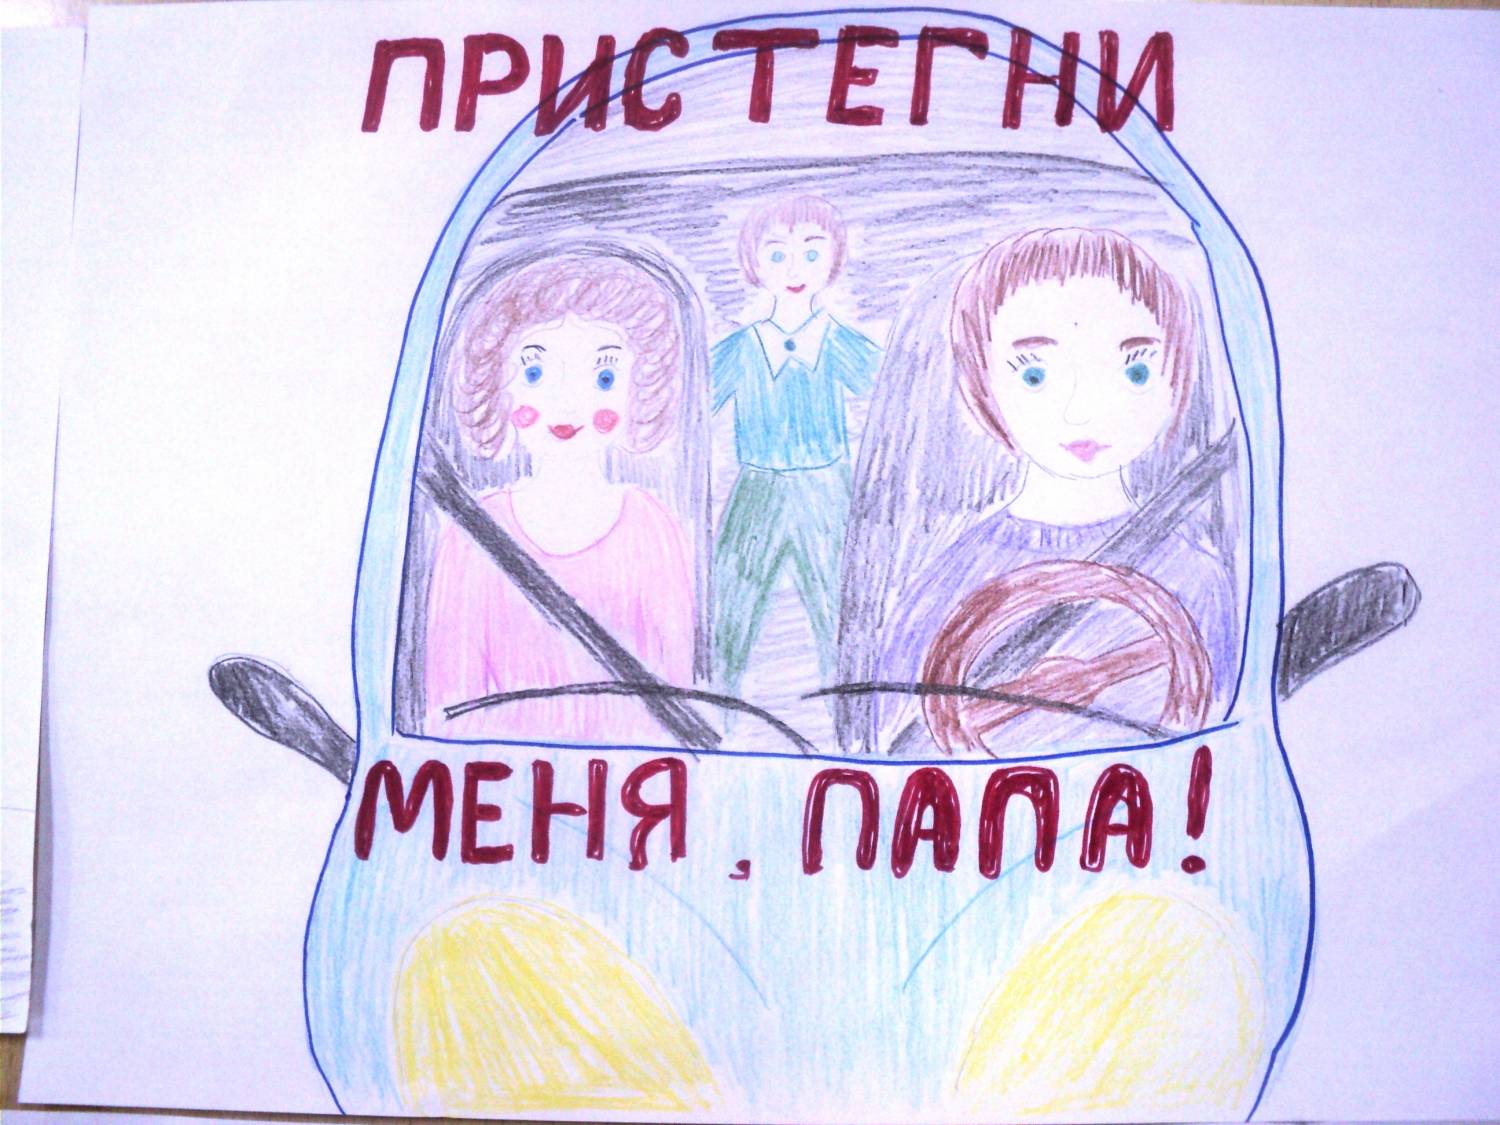 Плакат призывающий к соблюдению правил безопасности. Ребёнок главный пассажир рисунок. Плакат призывающий к соблюдению правил безопасности в транспорте. Рисунок на тему ребенок главный пассажир. Плакат кобоюдение правилбезопвсности в траснпопте.